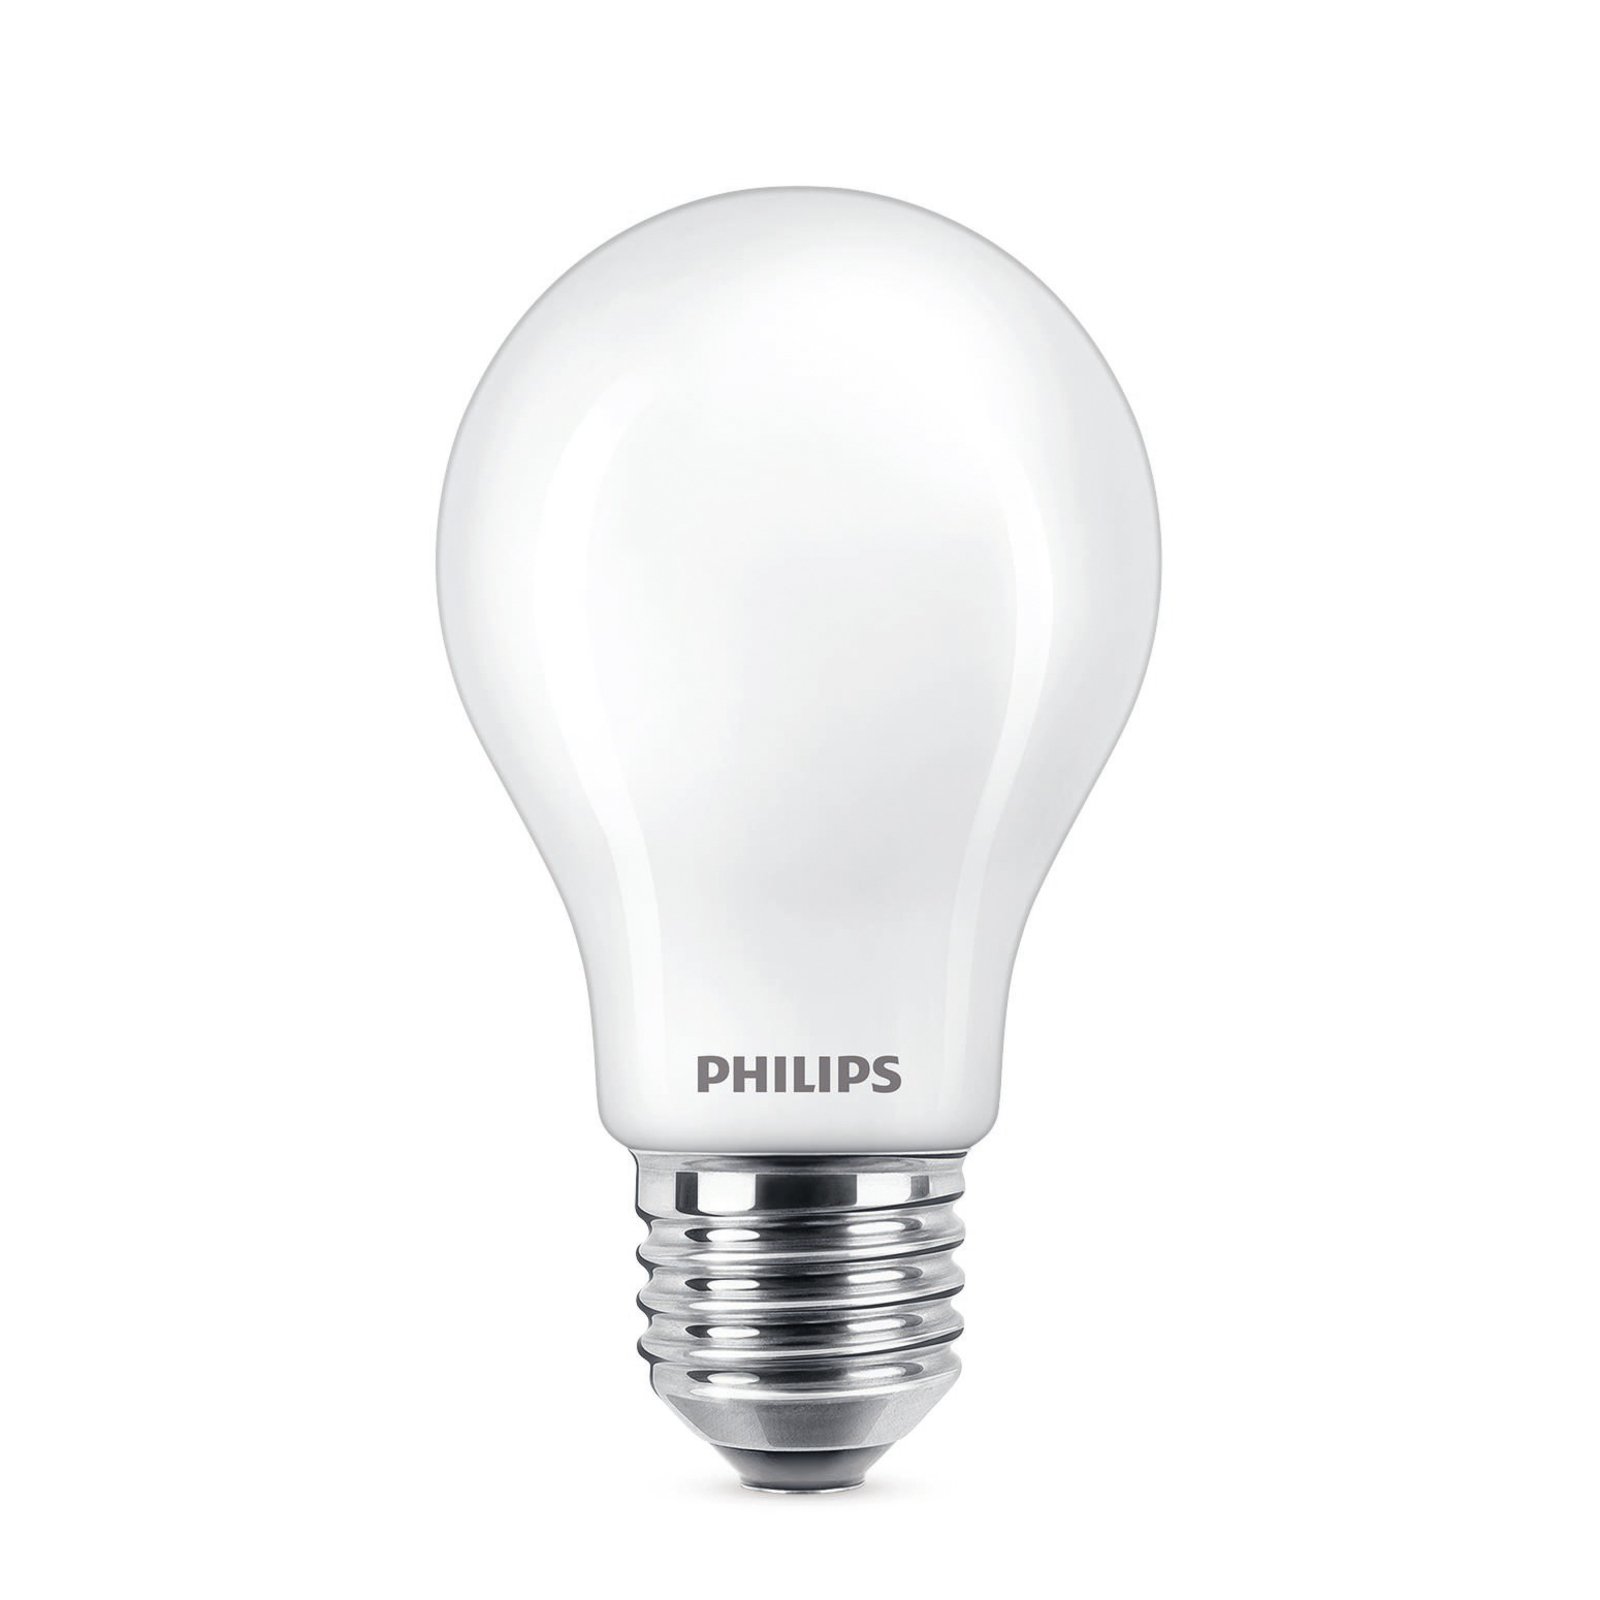 Philips LED žiarovka E27 7W 806lm 2700K matná 6 ks